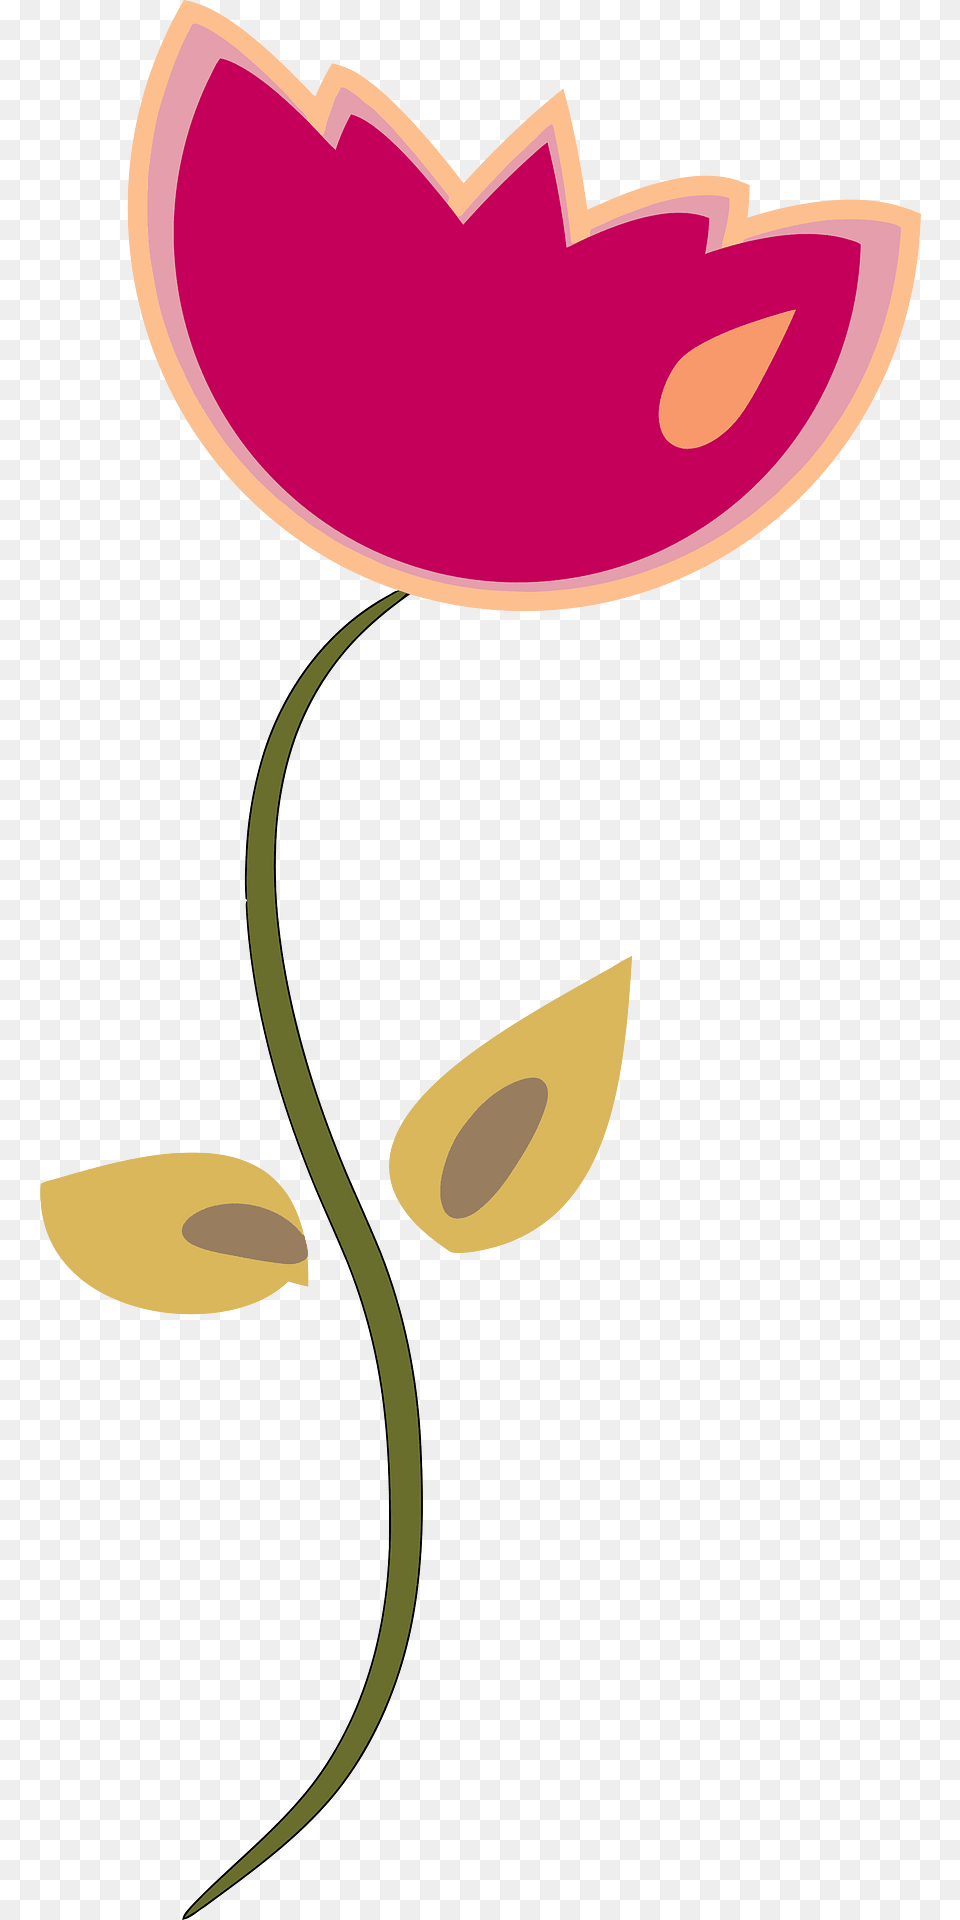 Tulip Clipart, Flower, Petal, Plant, Art Free Transparent Png